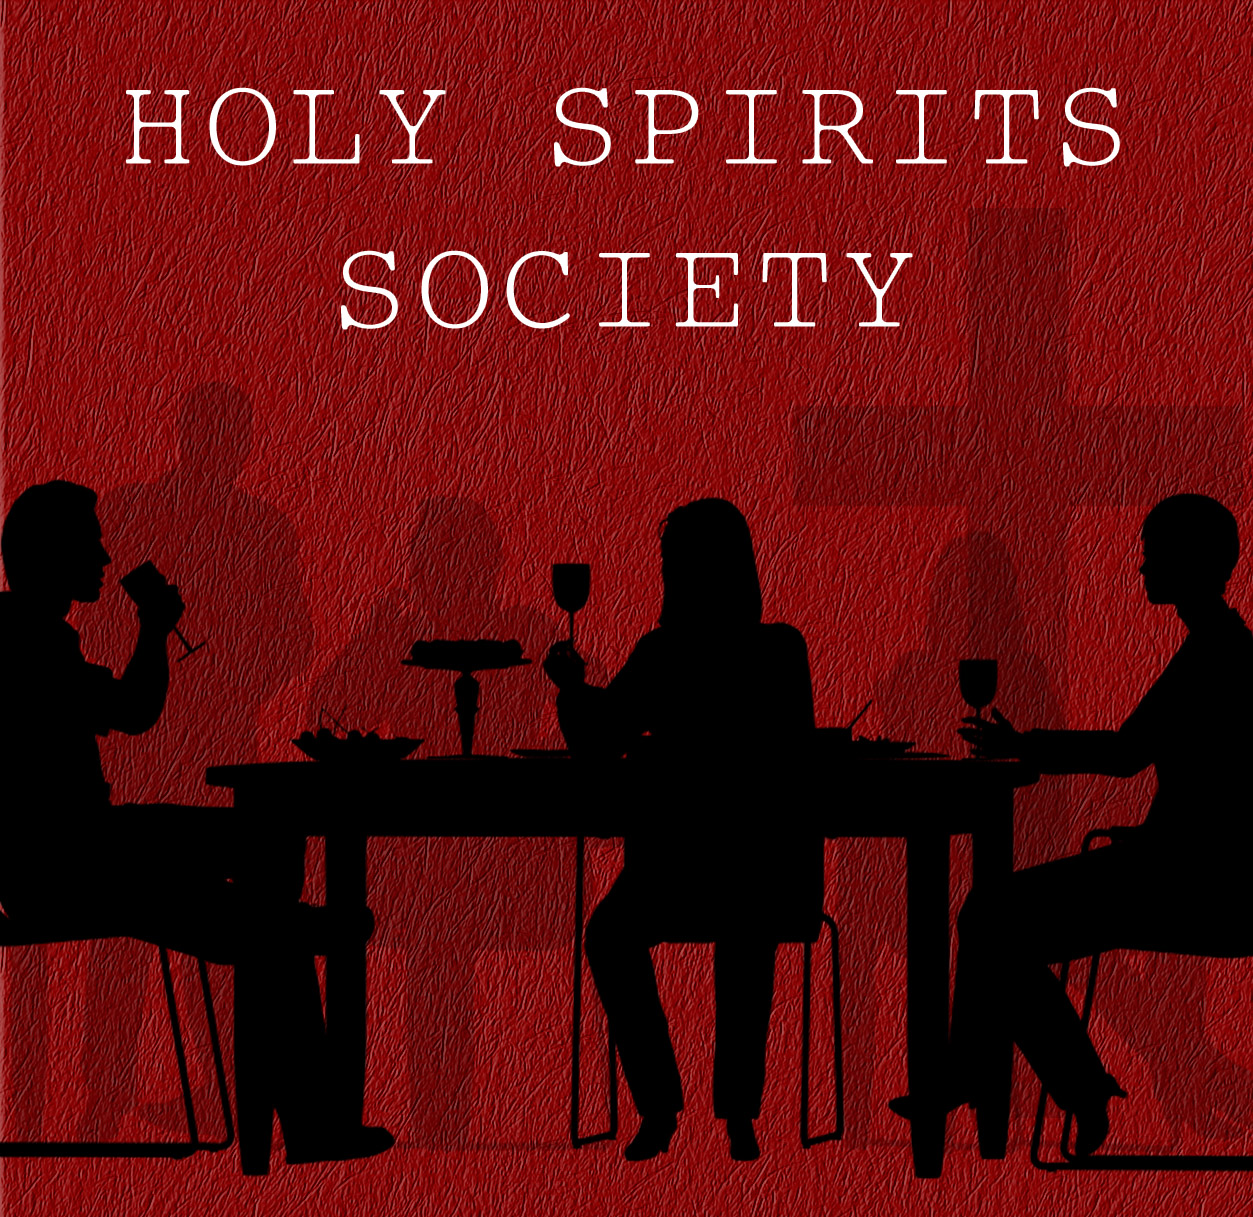 Holy Spirits Society friends gathering